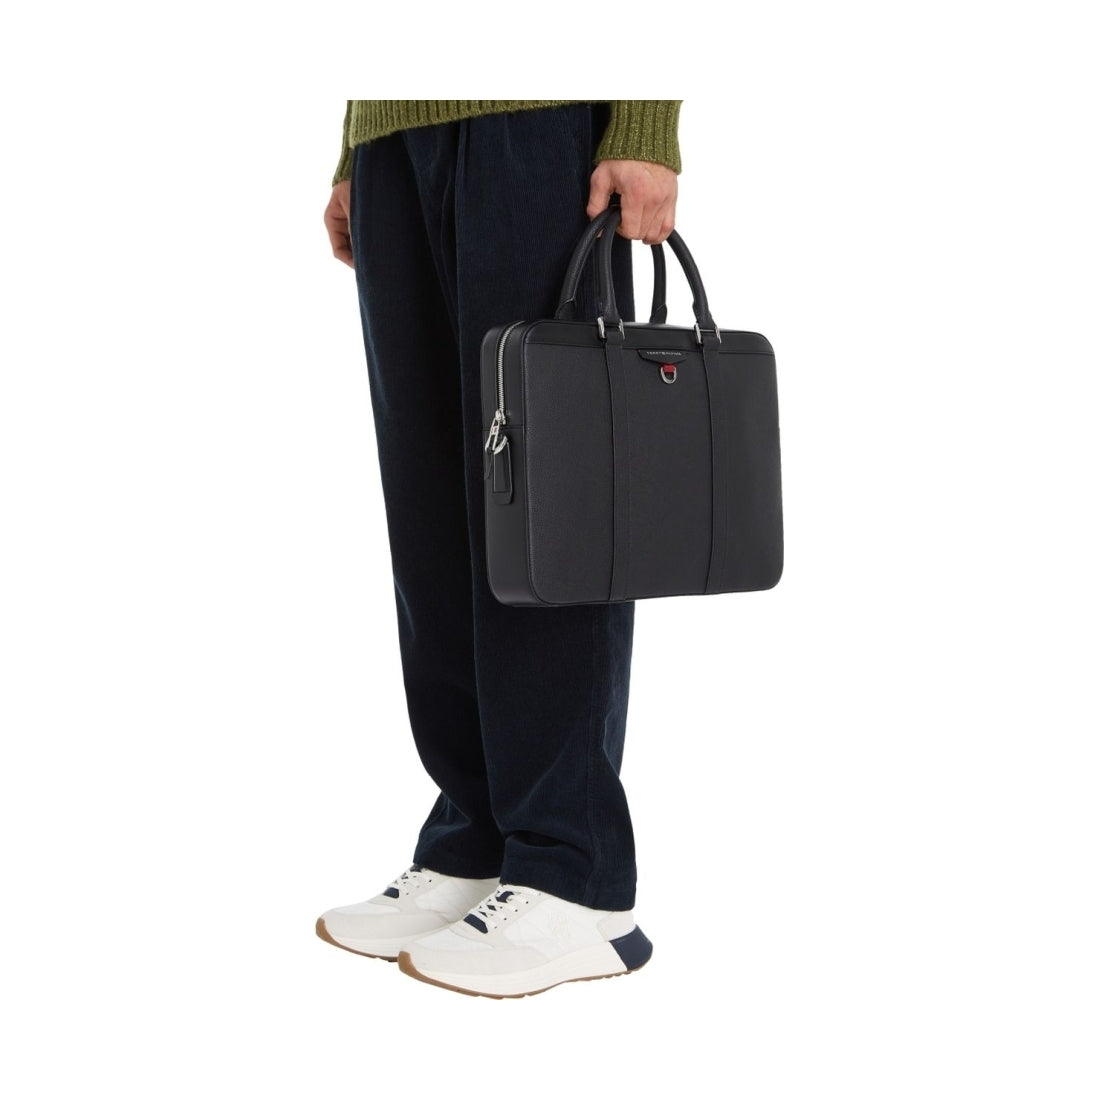 Tommy Hilfiger mens black structured laptop bag | Vilbury London